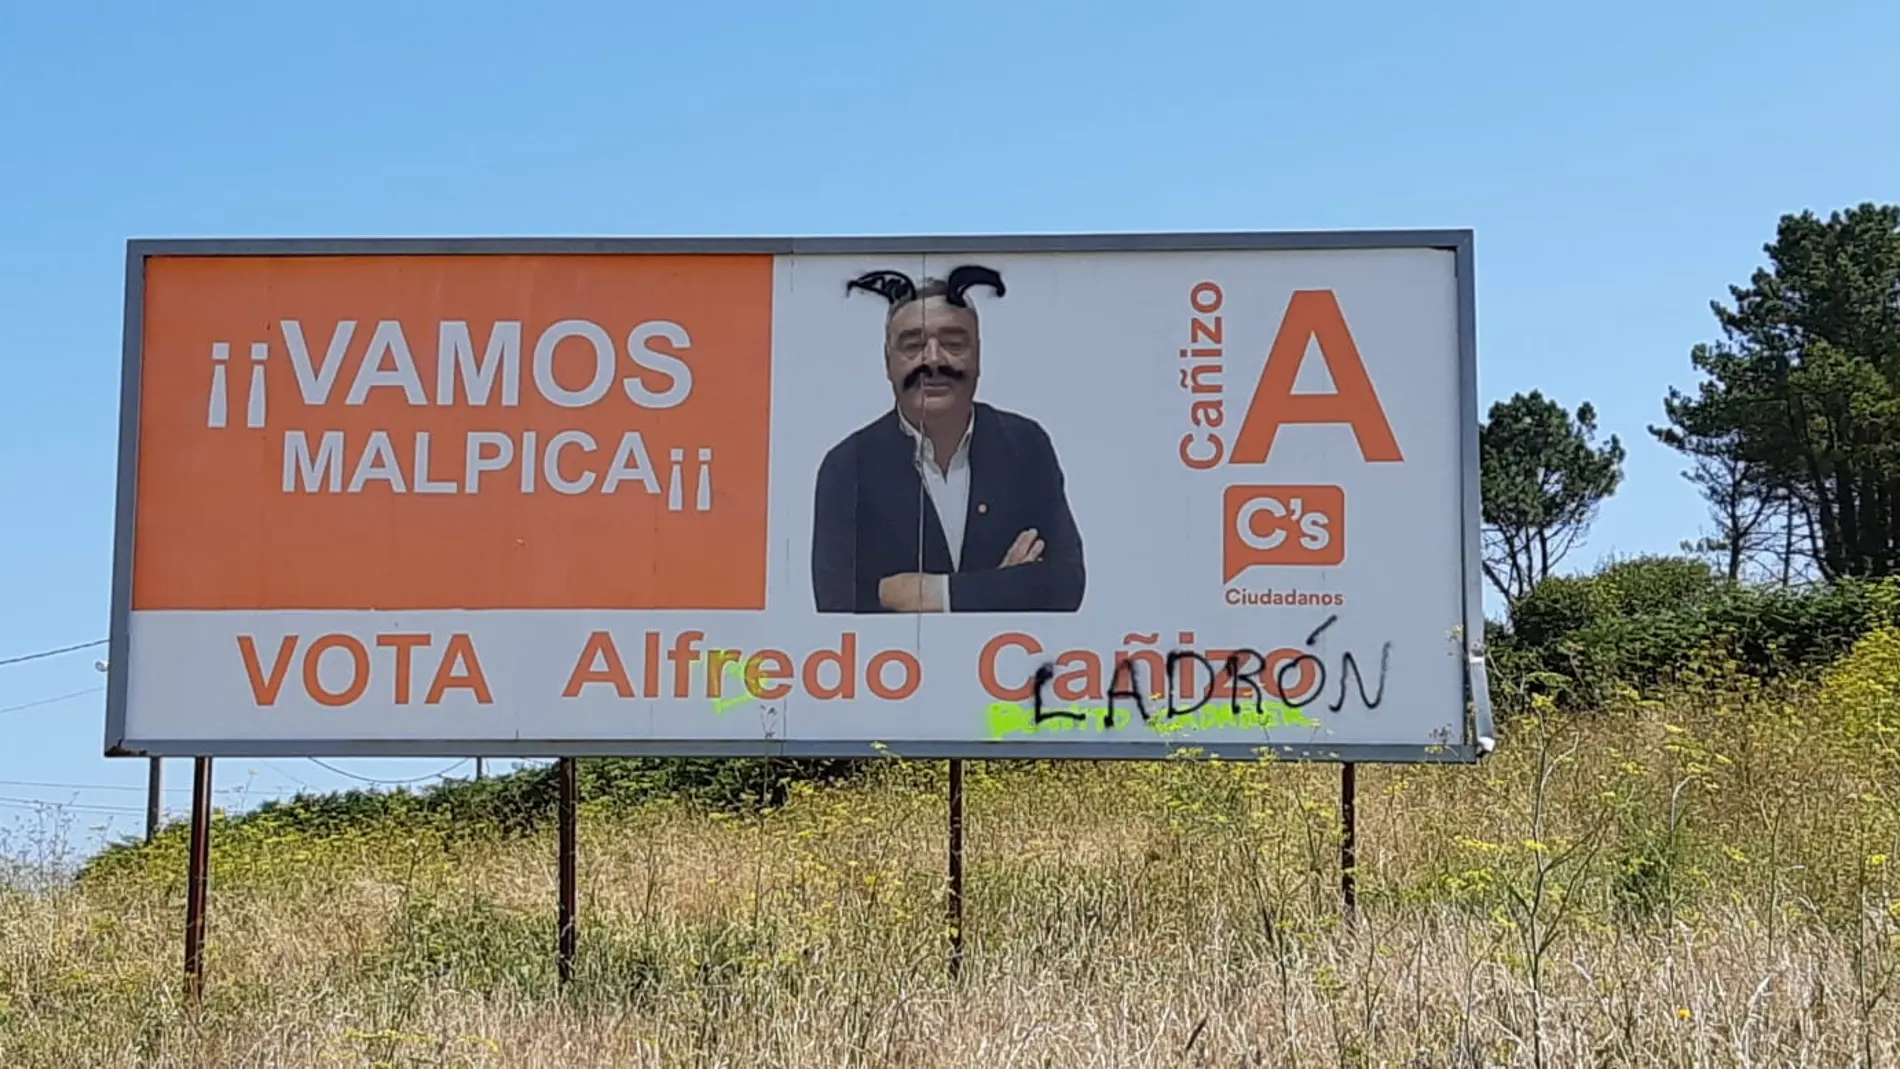 Aparecen nuevas pintadas con amenazas al que era concejal de Ciudadanos de Malpica, en A Coruña